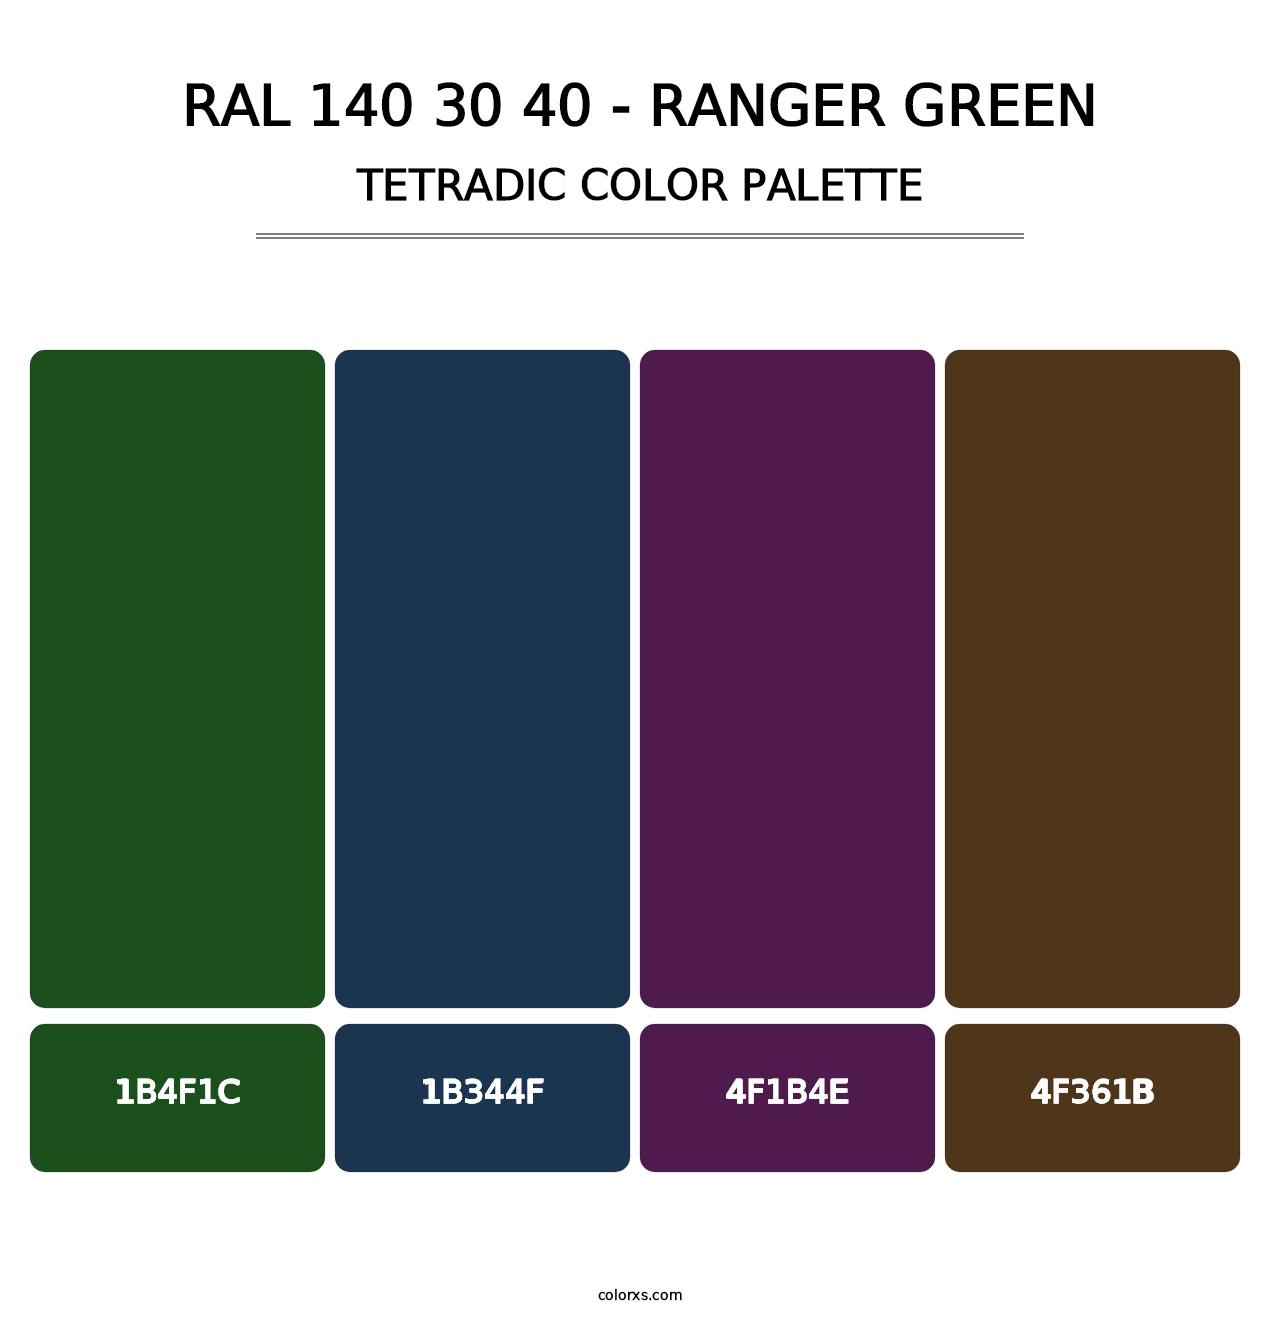 RAL 140 30 40 - Ranger Green - Tetradic Color Palette